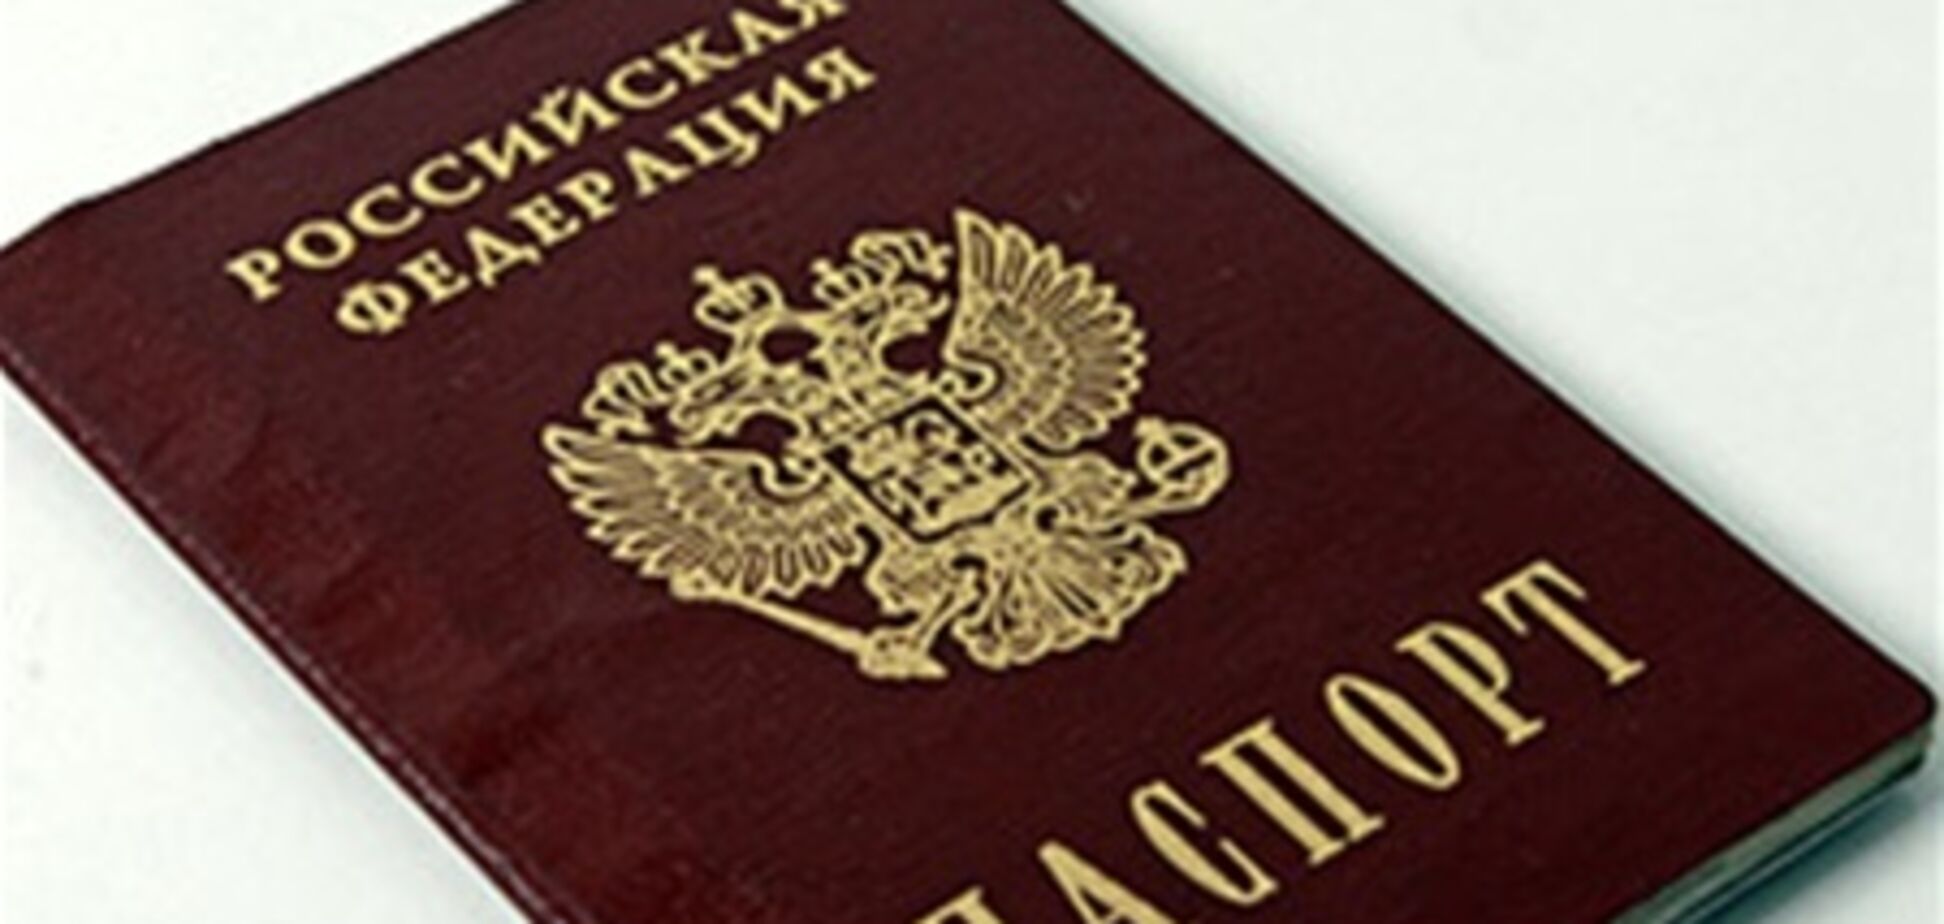 У Росії паспорта мають намір замінити пластиковими картами